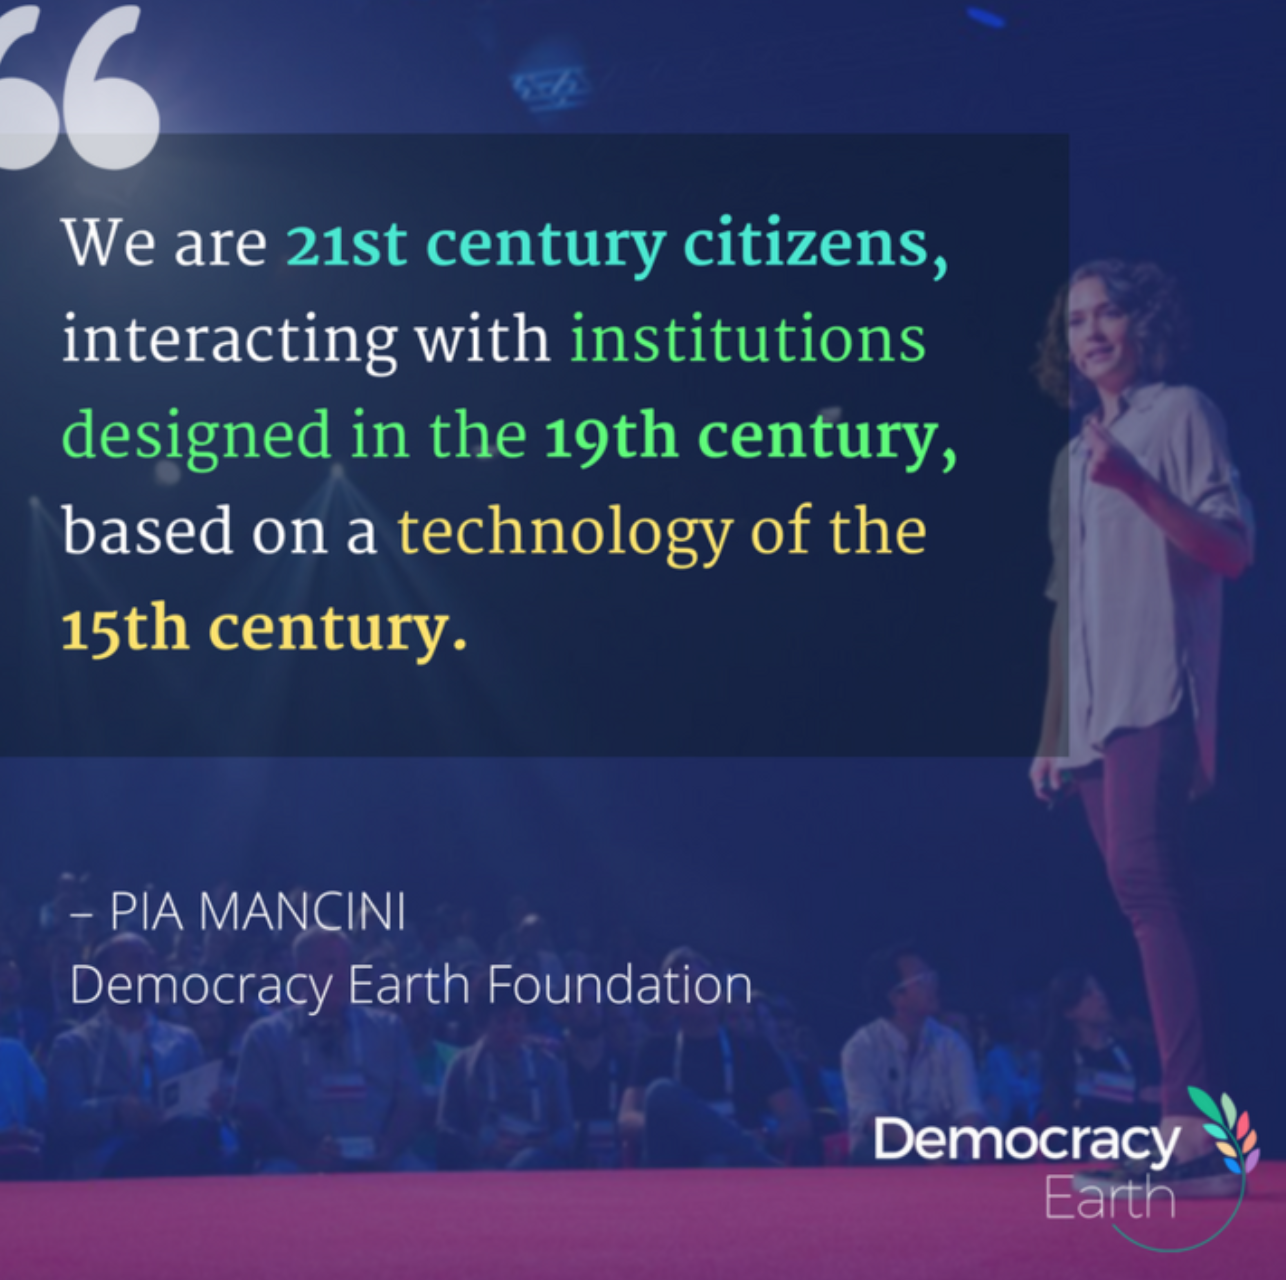 “ Somos cidadãos do século 21, interagindo com instituições projetadas no século 19, com base em uma tecnologia do século 15”